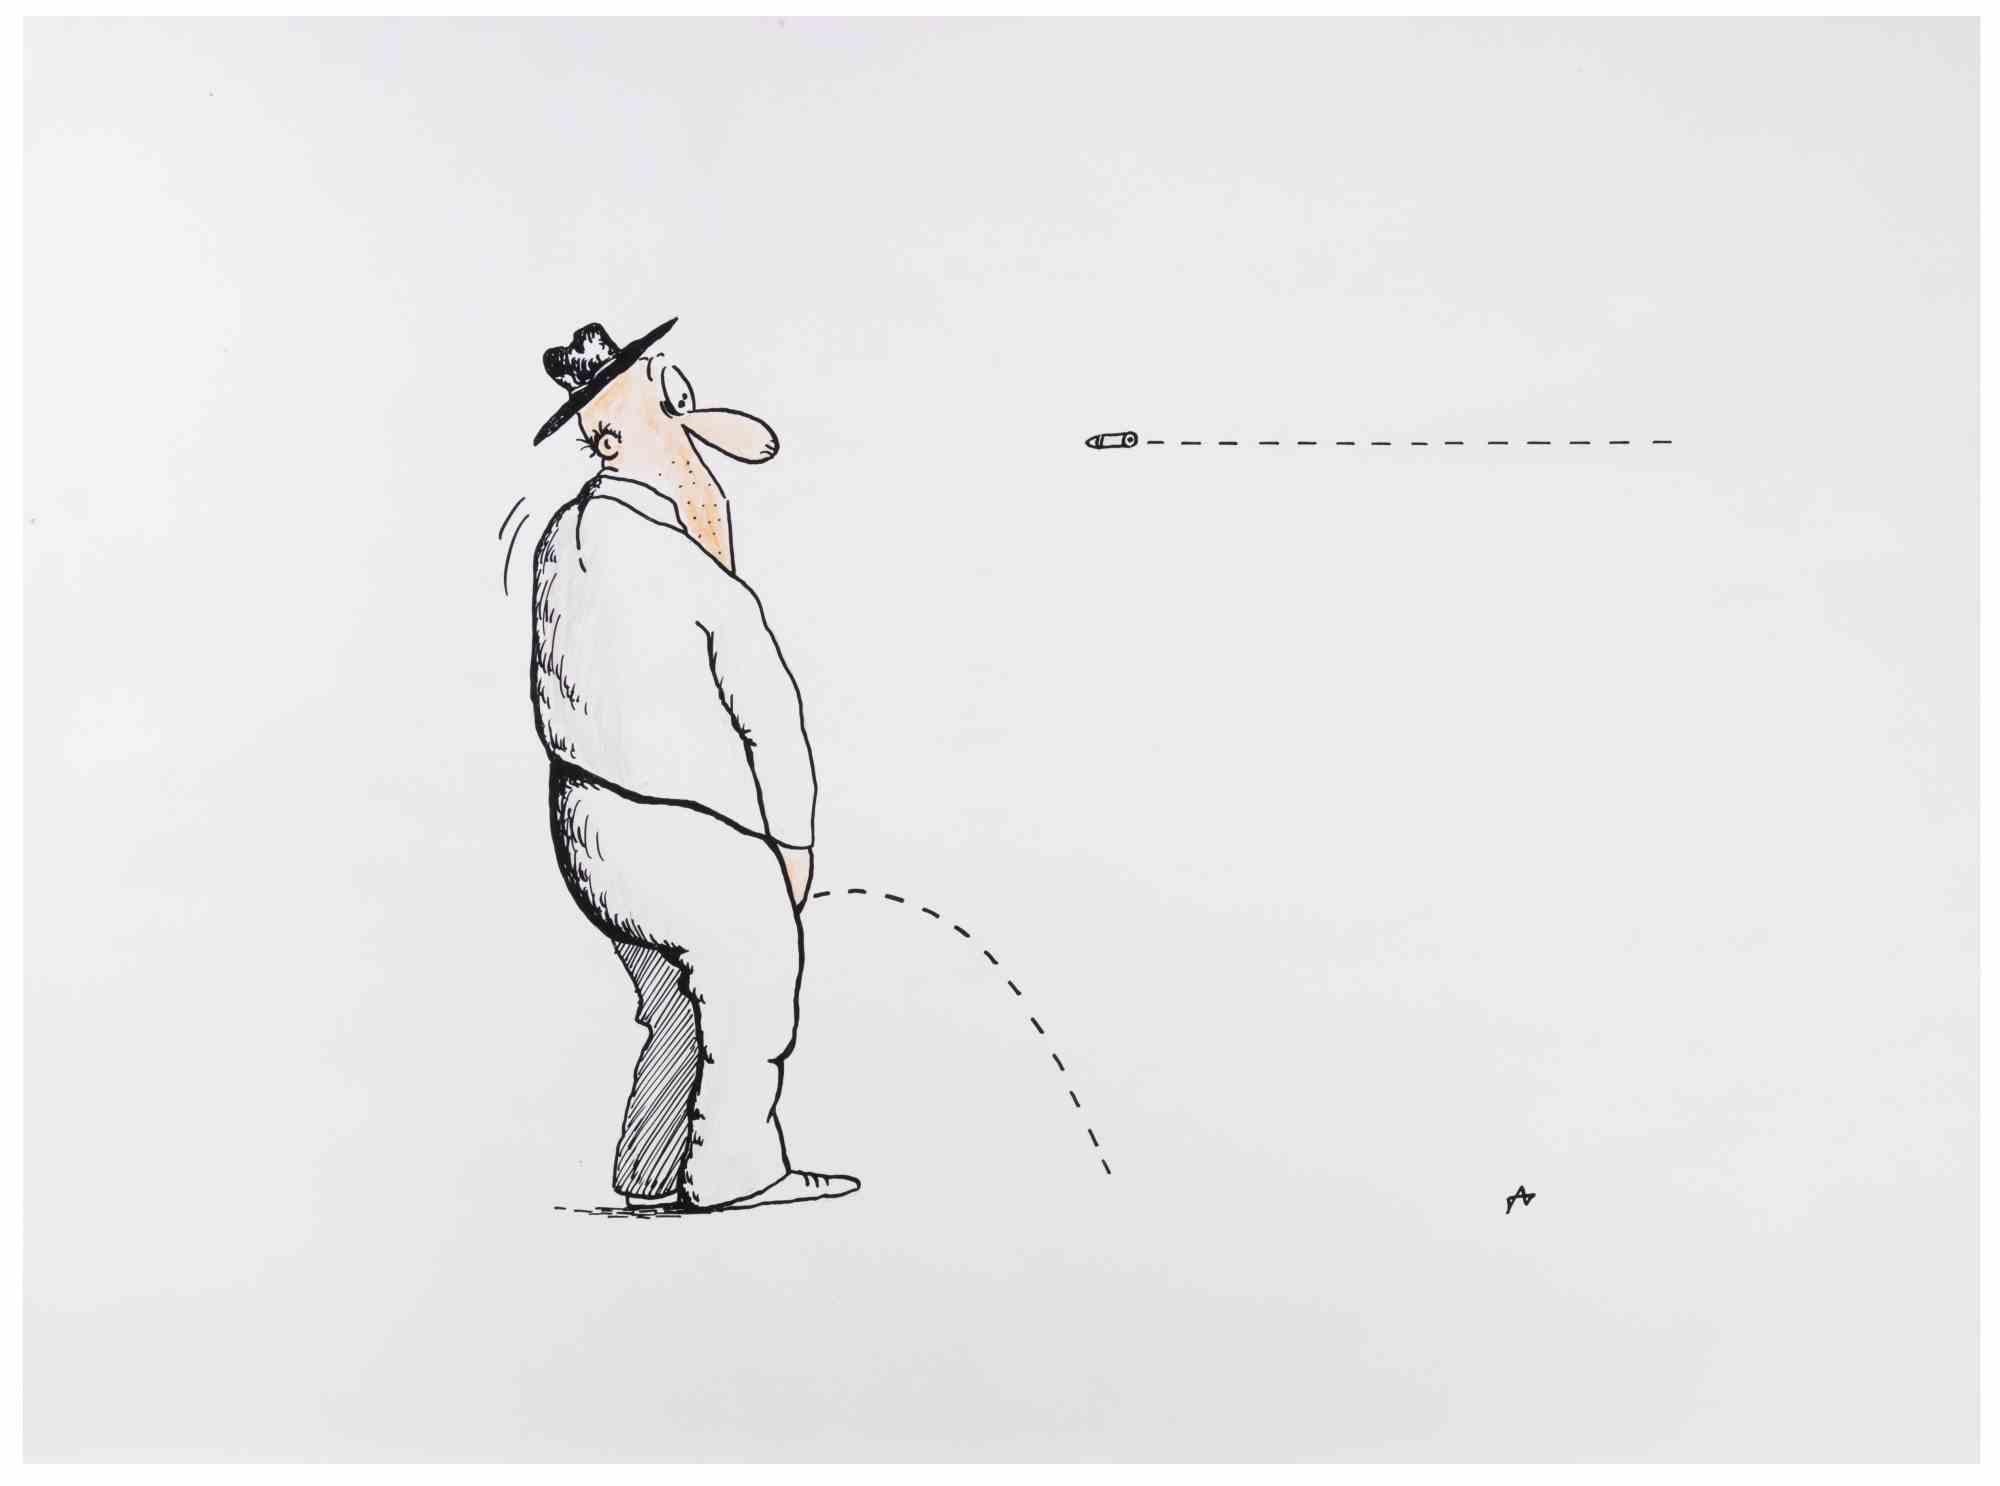 The Lines ist ein Zeichenkunstwerk, das Alexander Dubovsky in den 1980er Jahren realisierte.

Aquarell und Tuschezeichnung auf Papier.

Rechts unten handsigniert.

Der Erhaltungszustand ist gut.